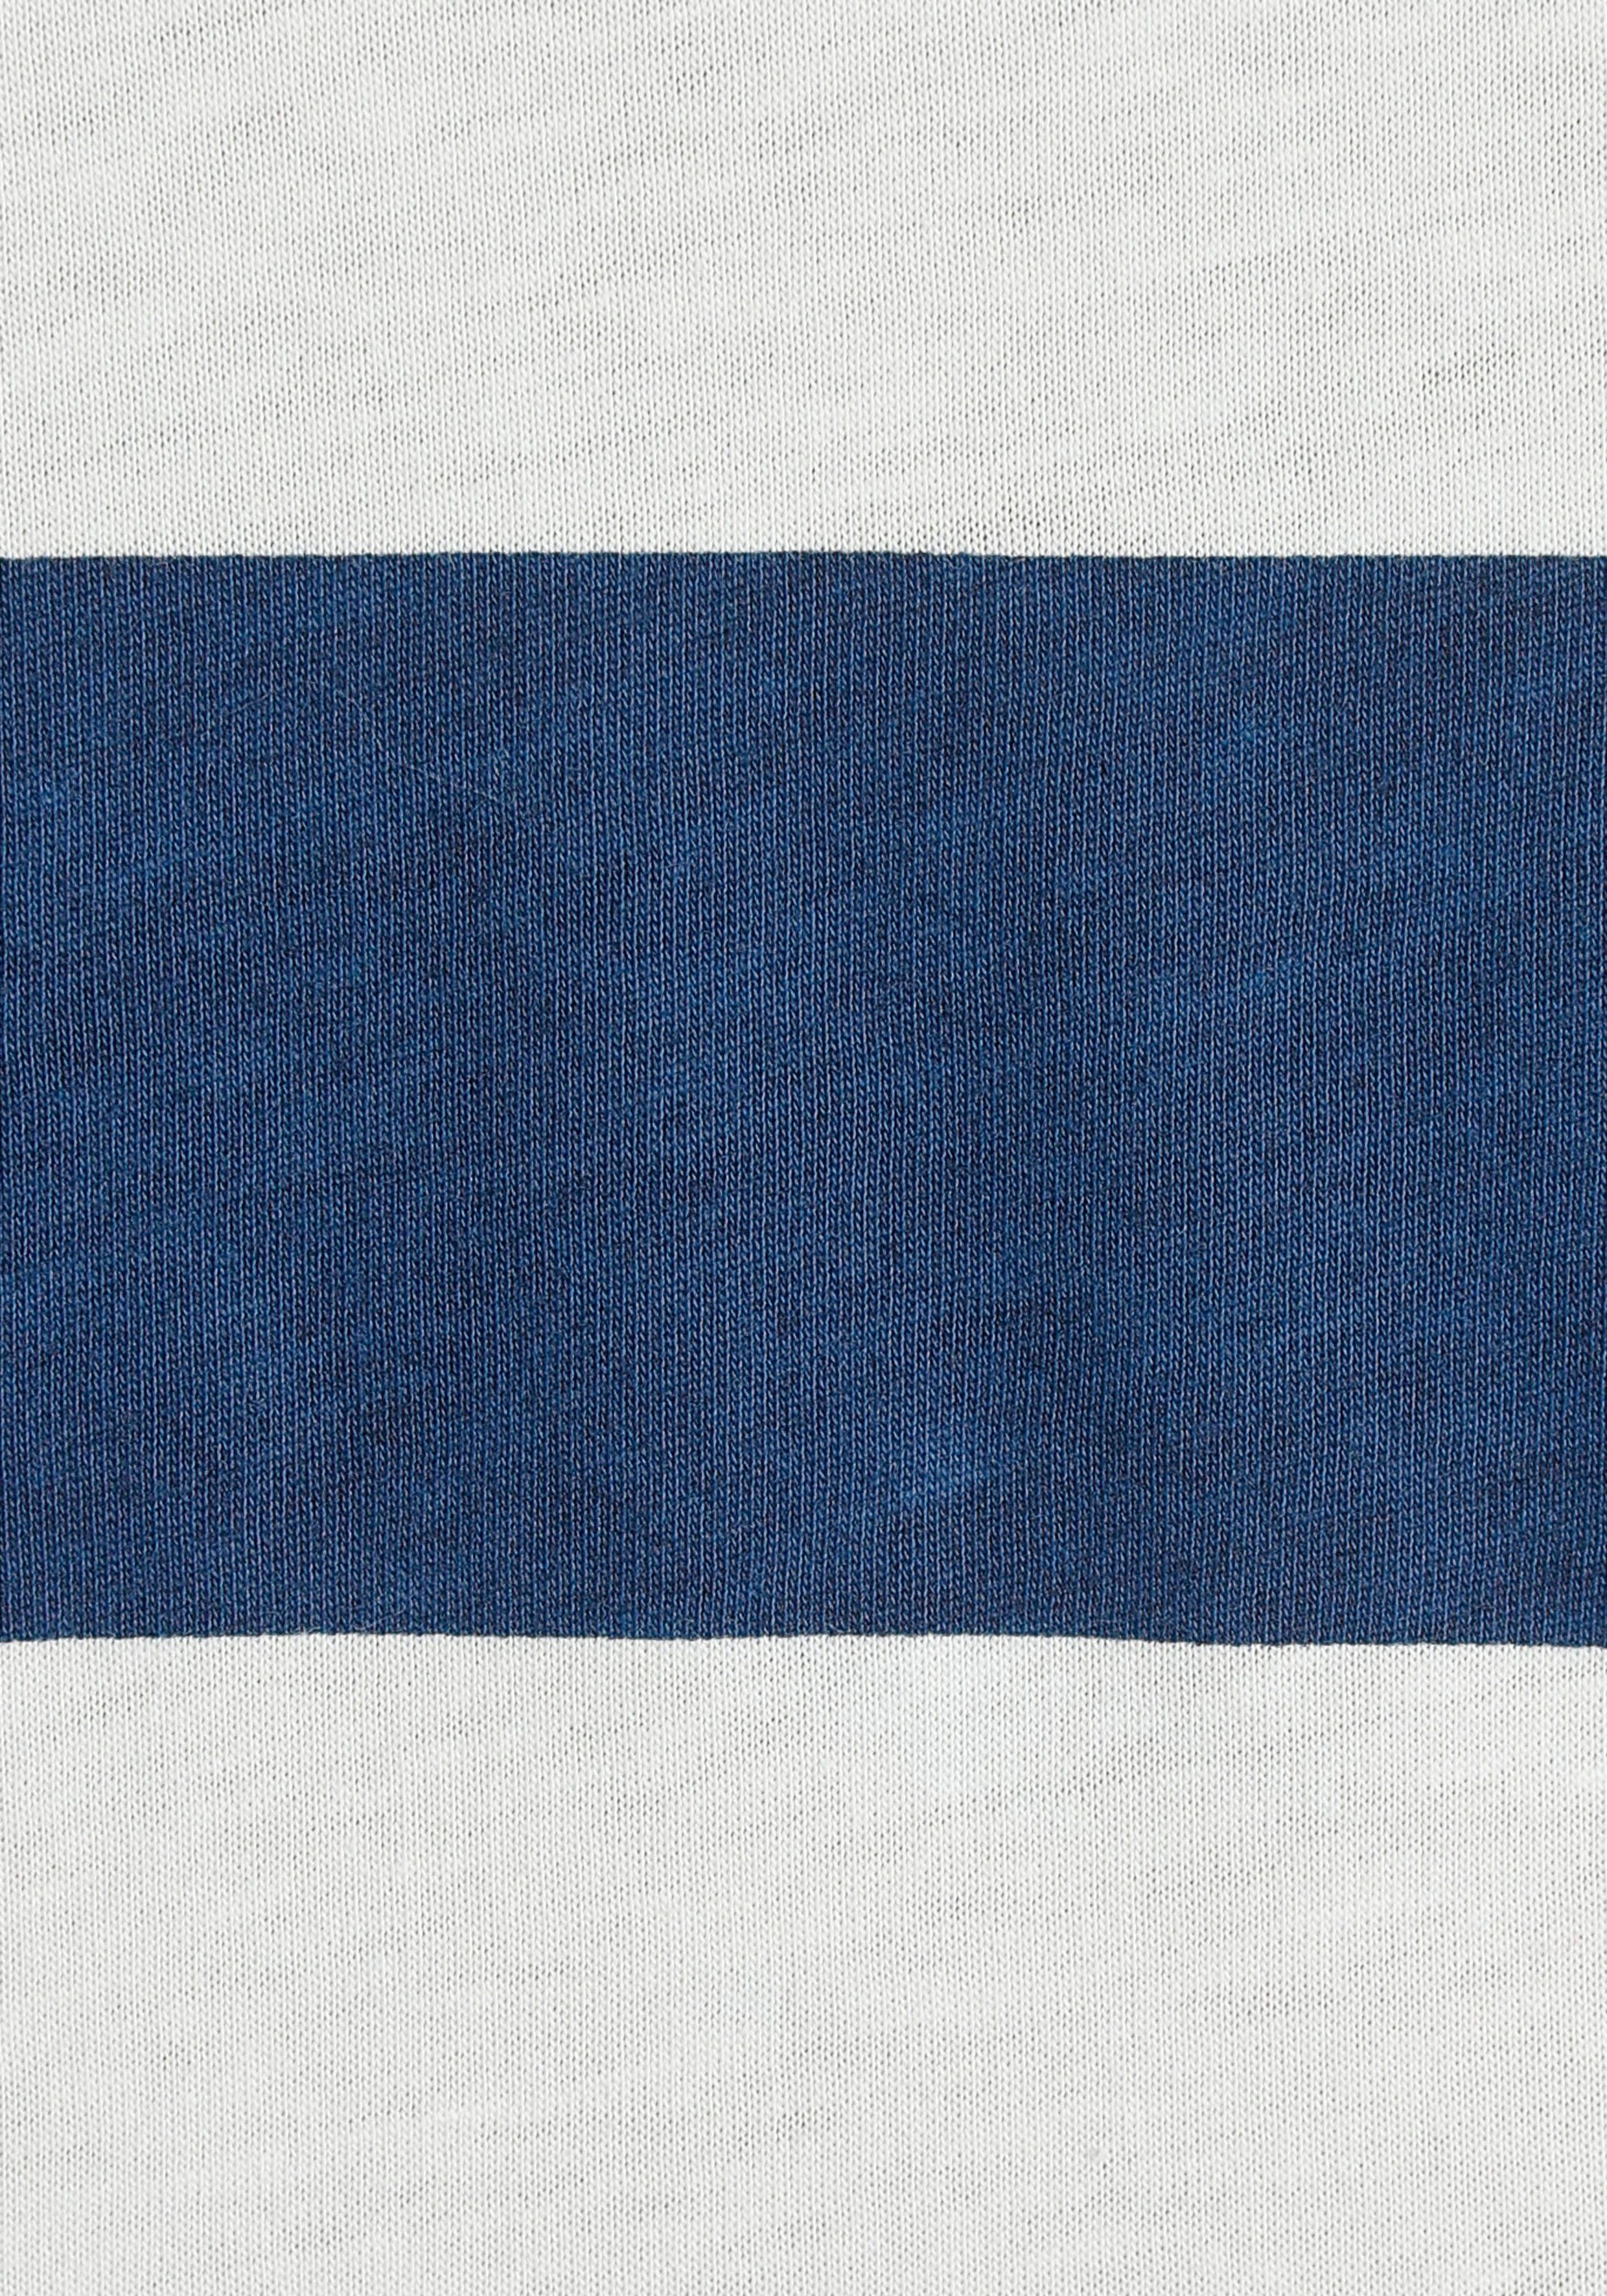 dunkelblau-weiß-gestreift in Longsleeve s.Oliver schönem Streifenmuster